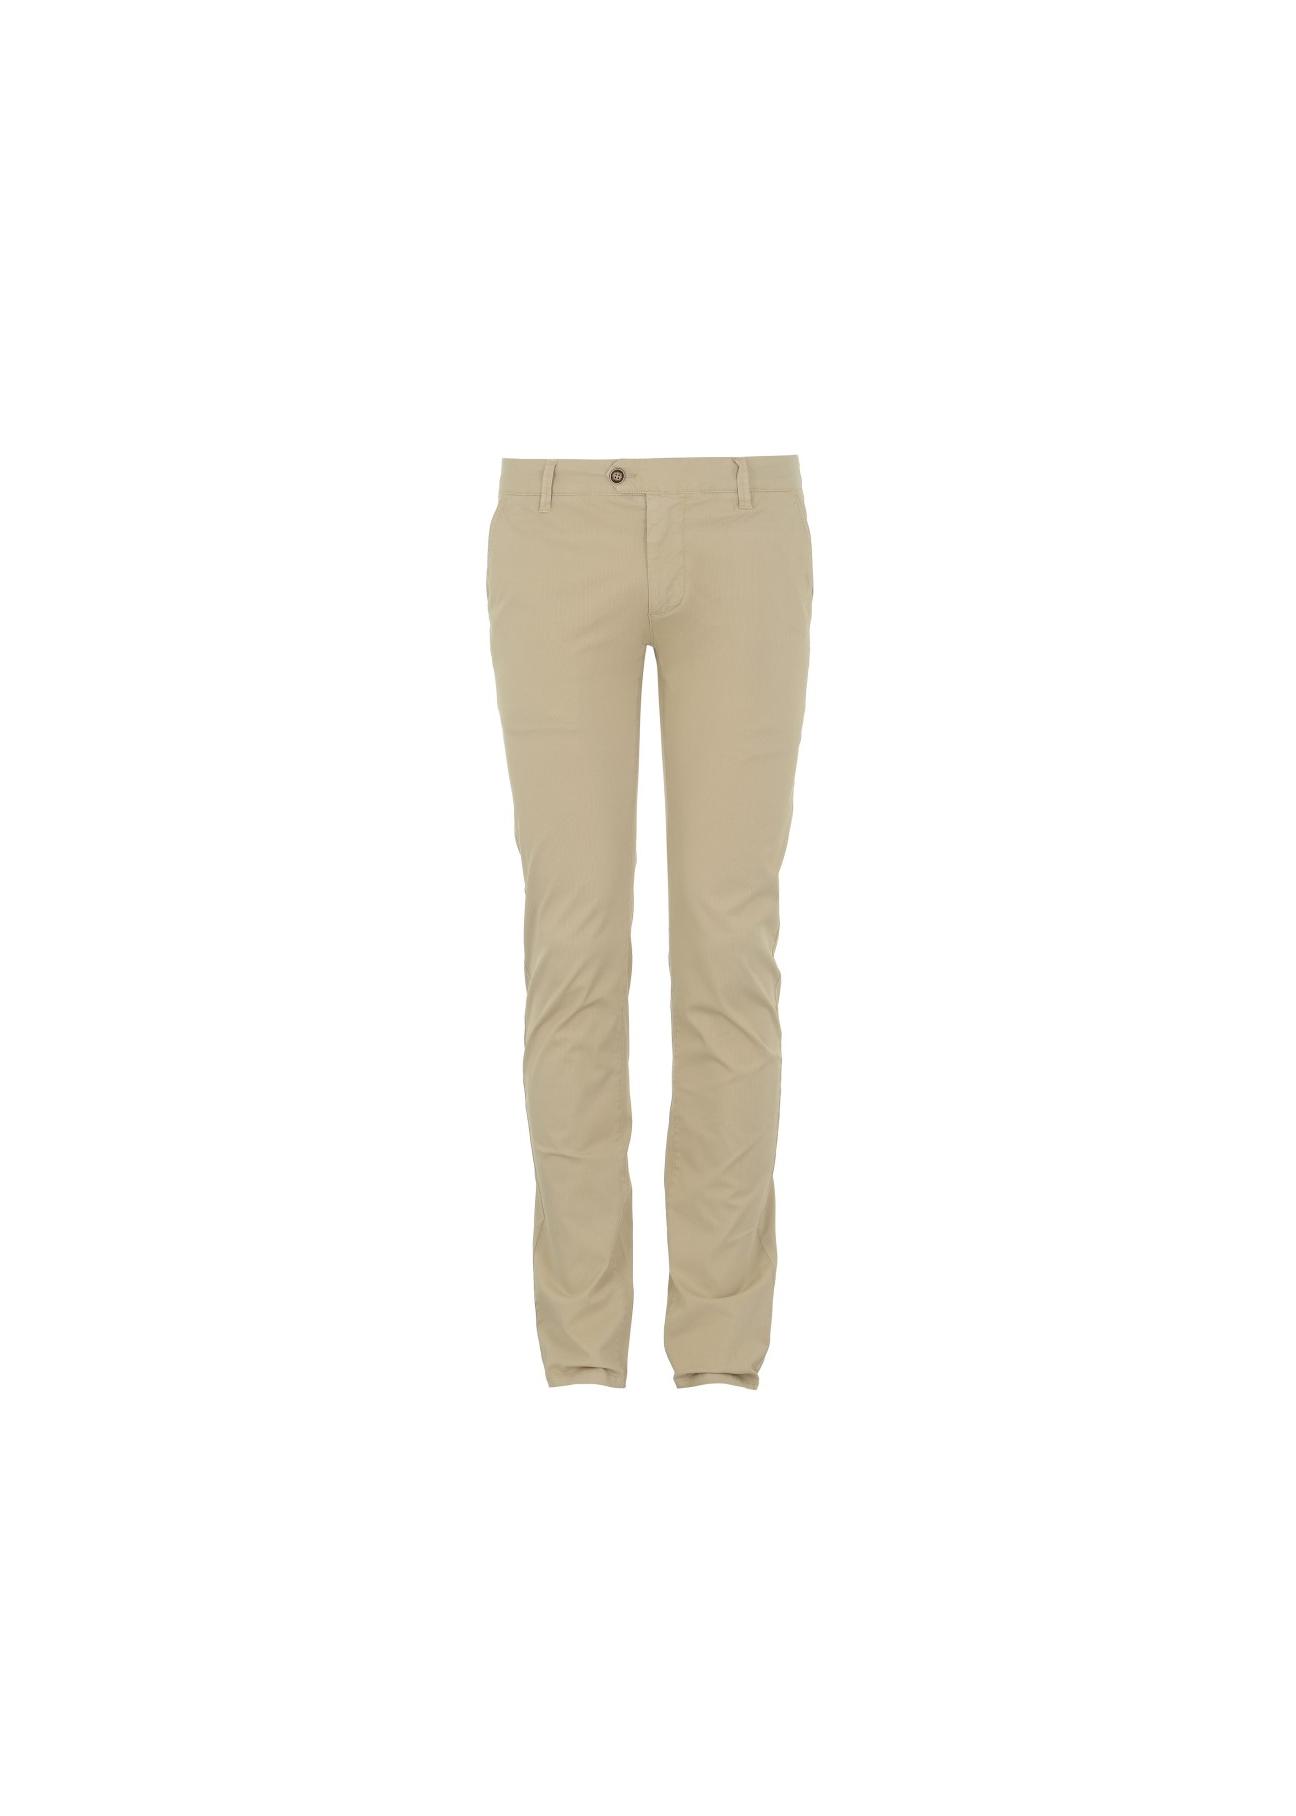 Spodnie męskie SPOMT-0016-81(W17)